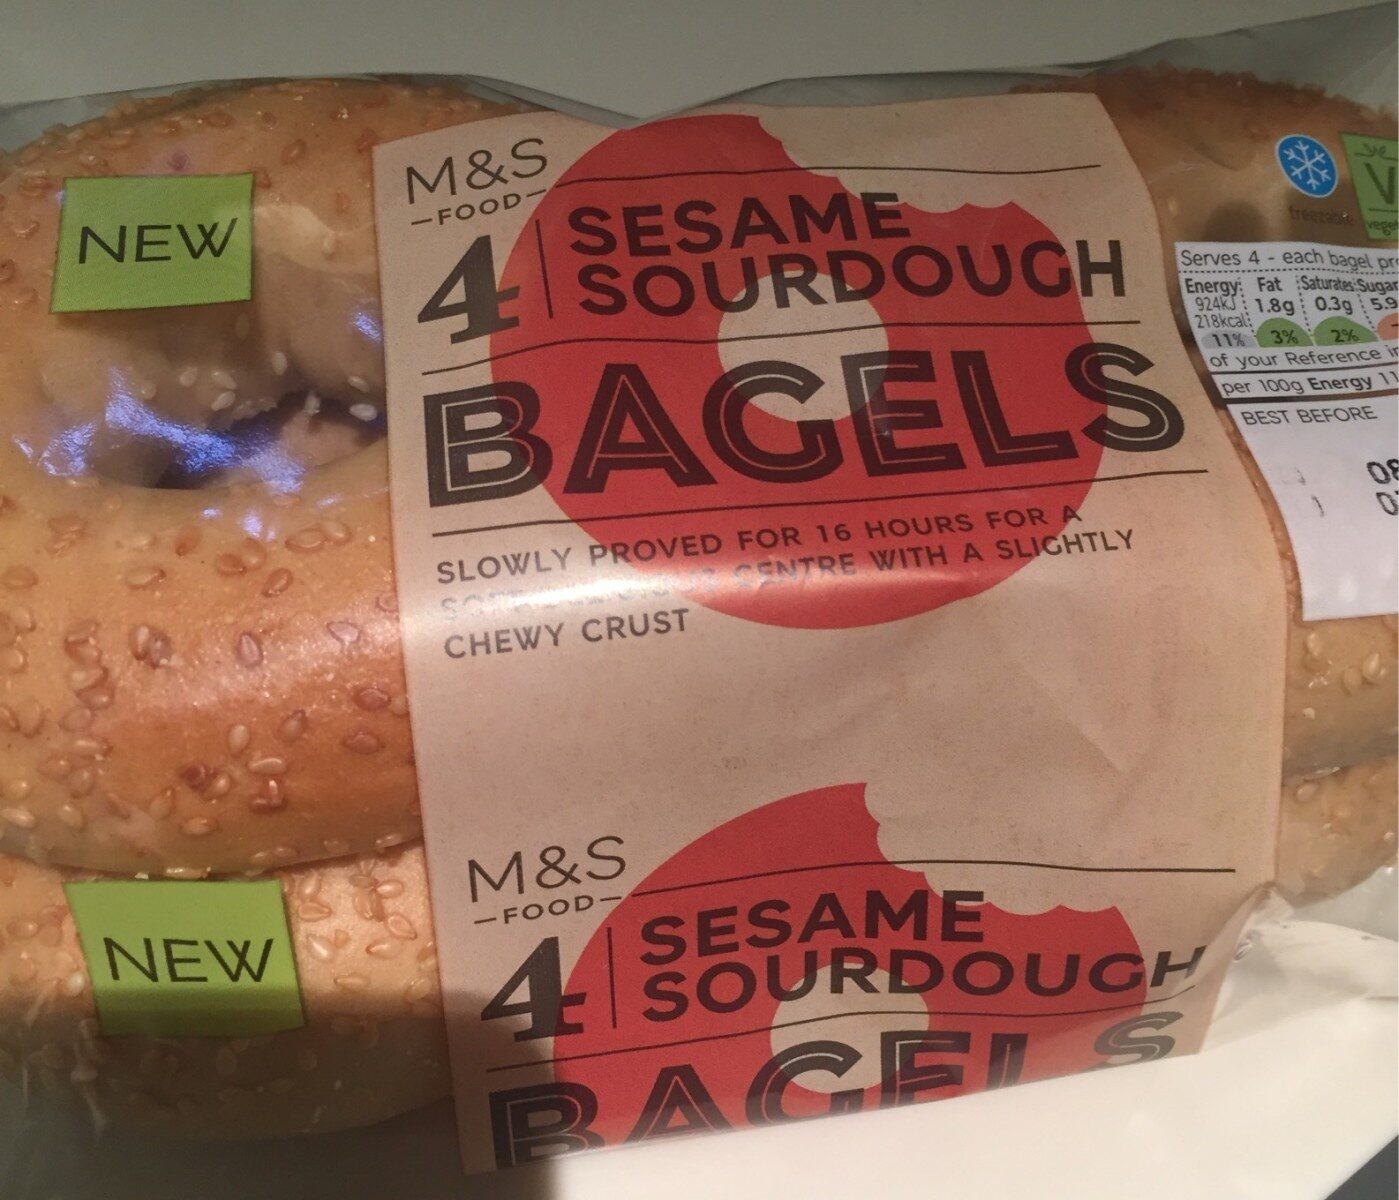 Sesame sourdough Bagels - Product - fr